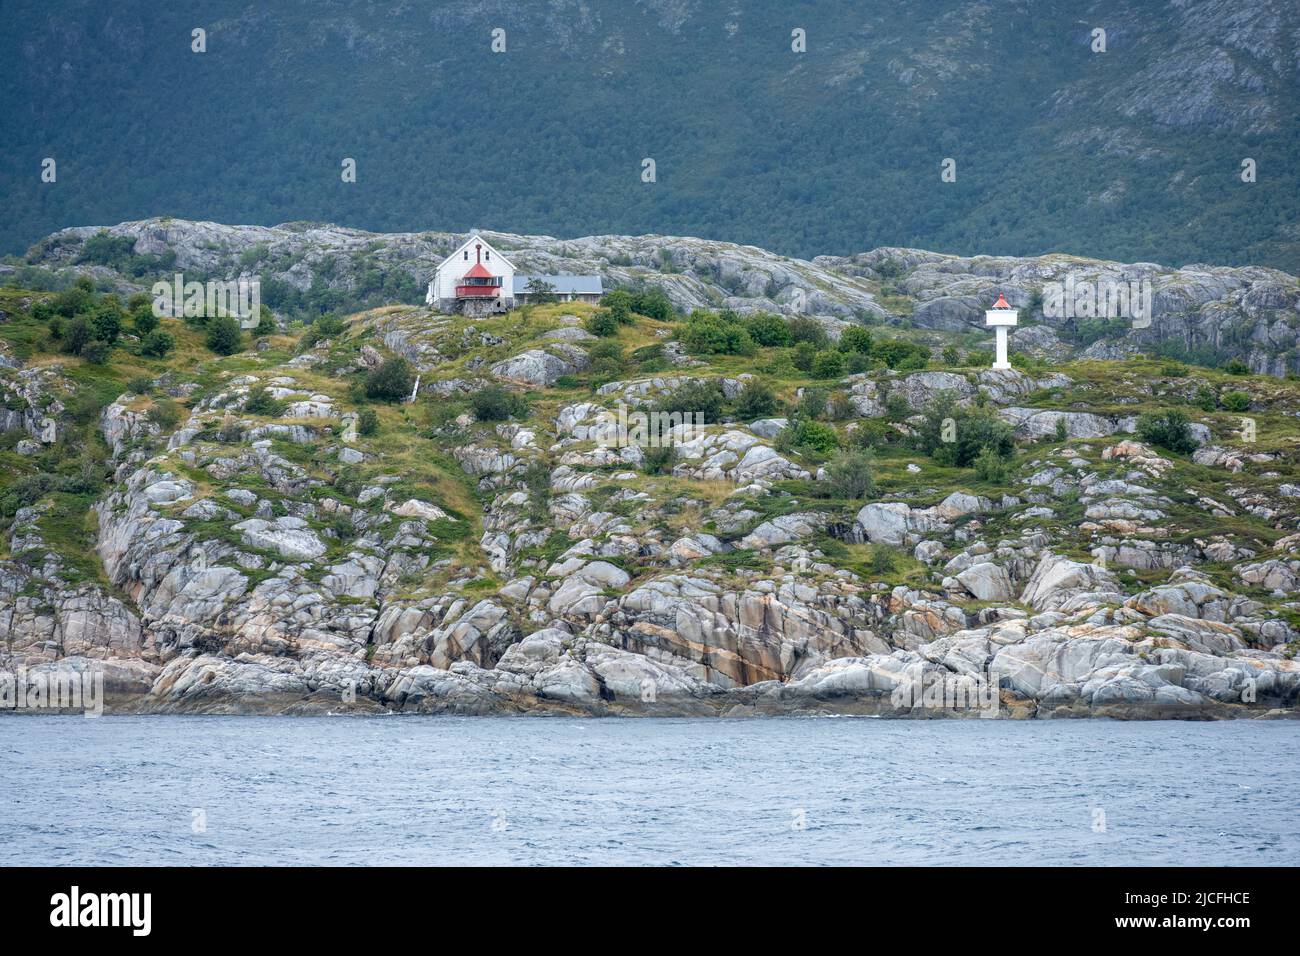 Norway, Nordland, Bjørnøy lighthouse on the island Bjørnøya. Stock Photo